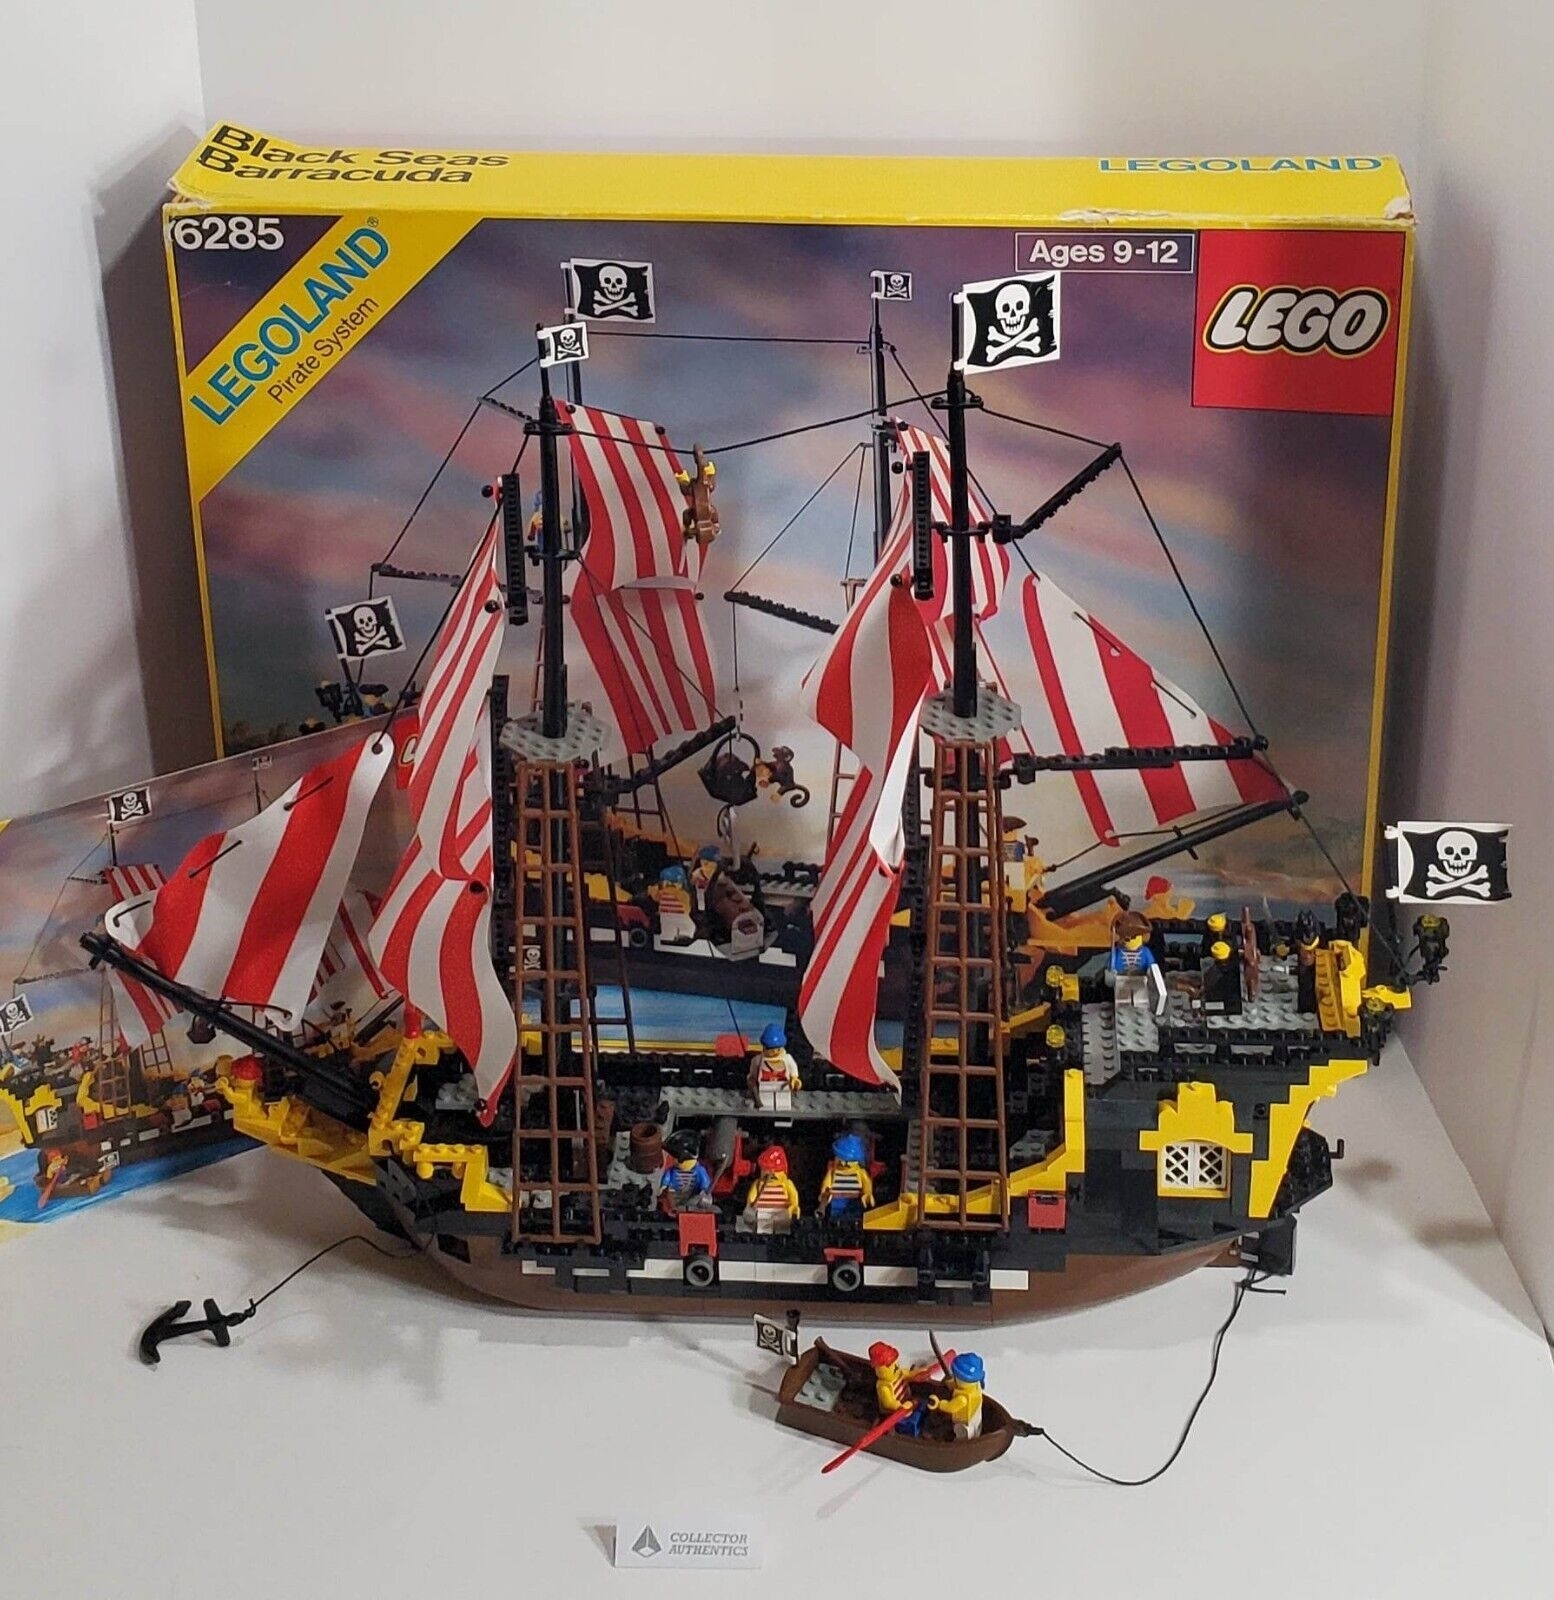 A Lego ship